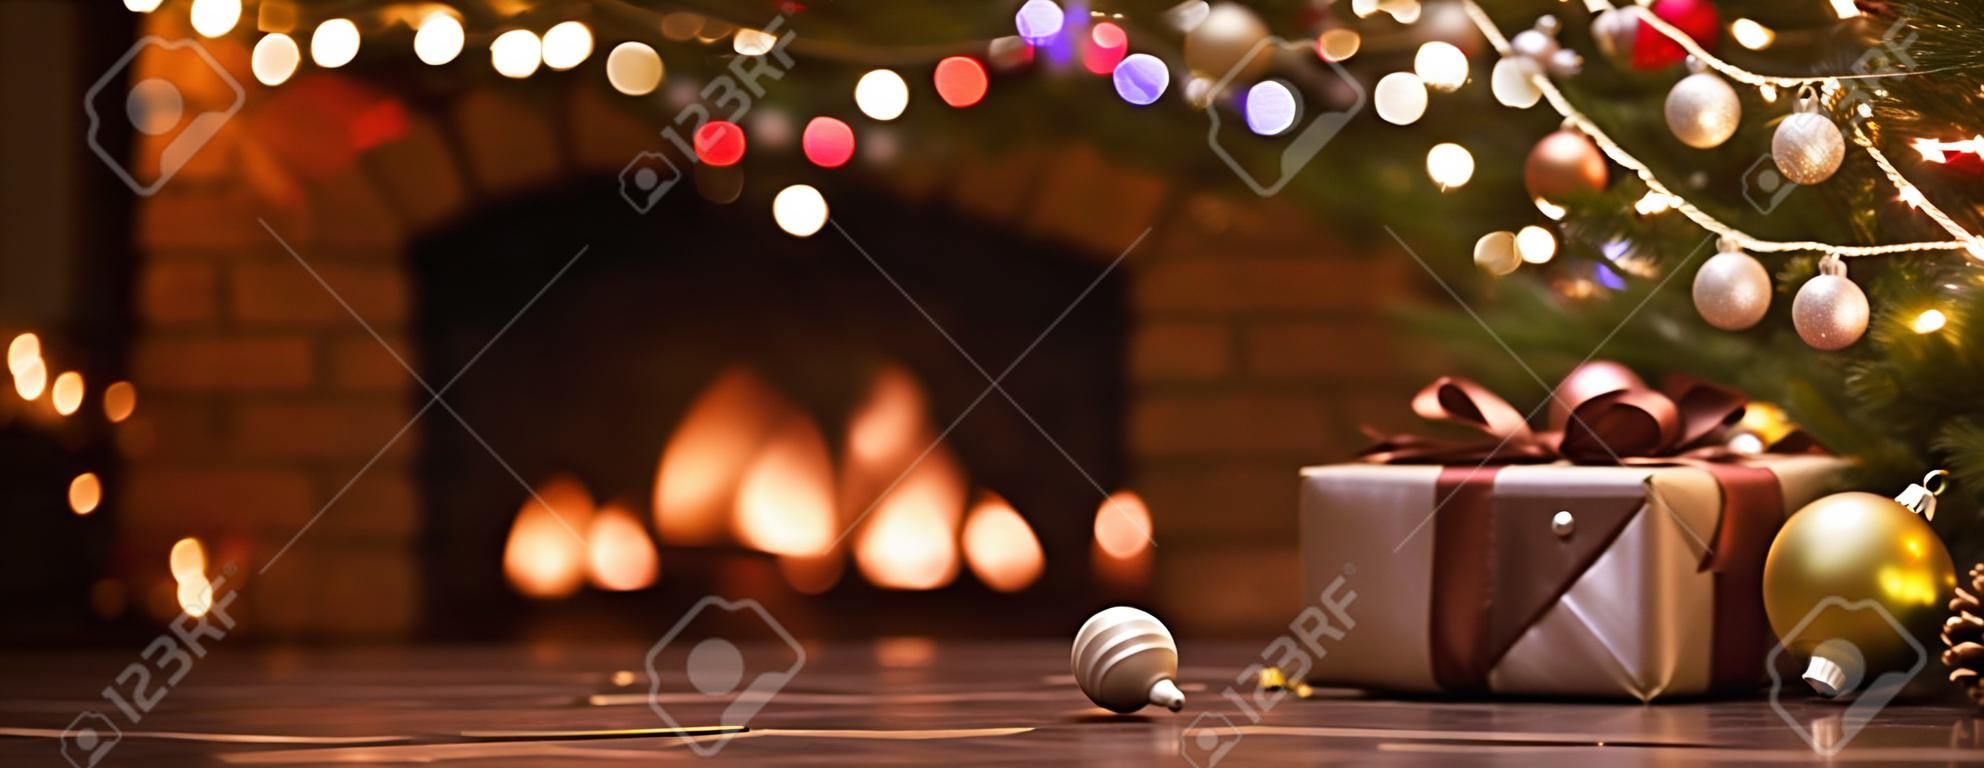 Árbol de Navidad con adornos cerca de una chimenea con luces